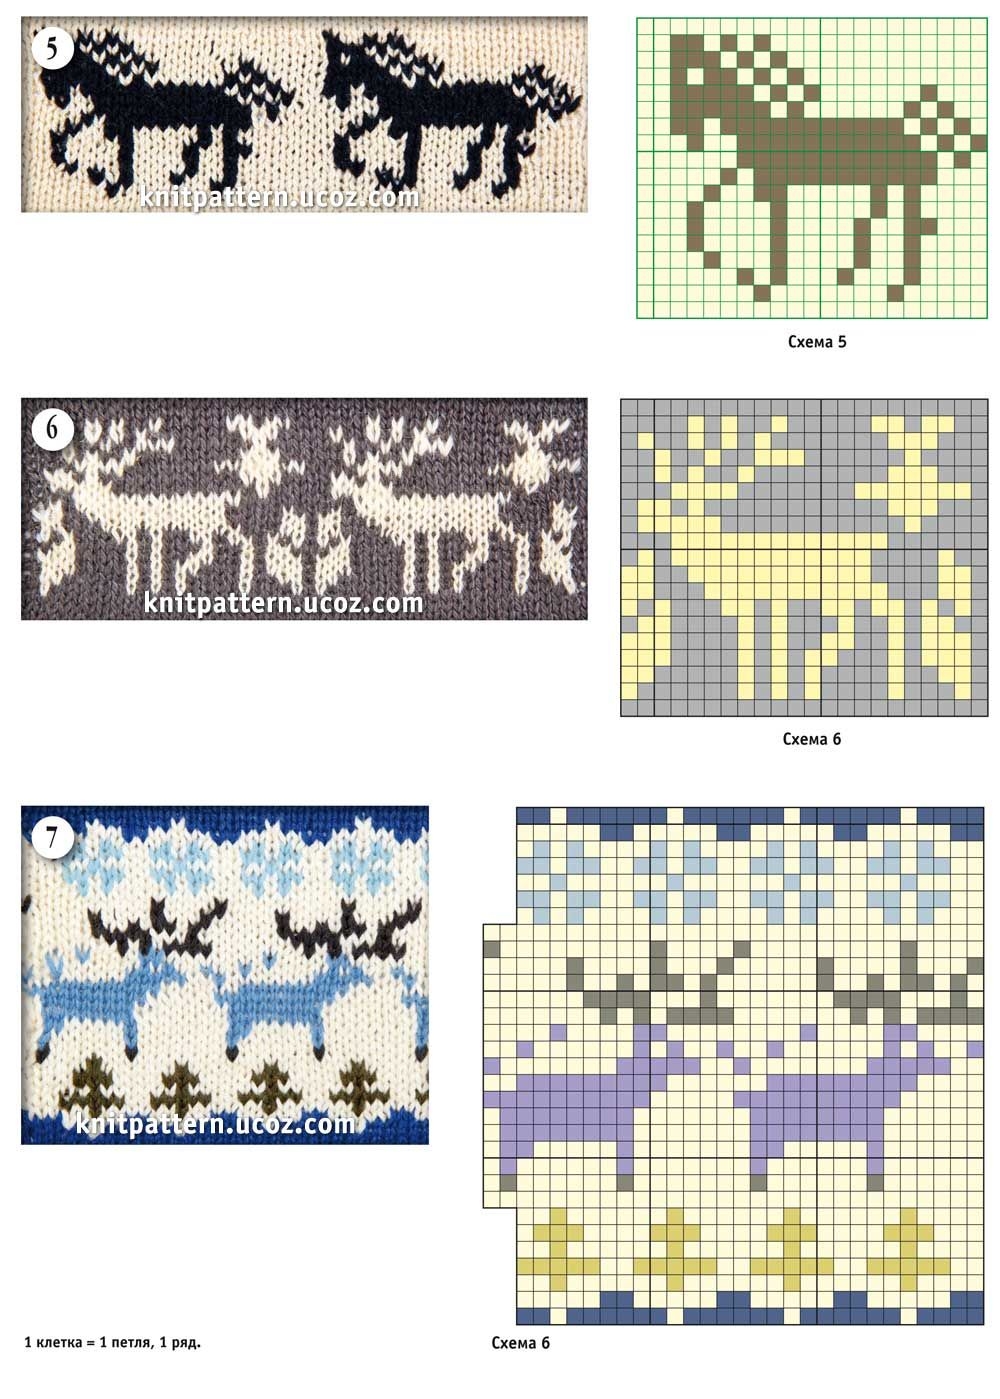 50 схем с волшебными оленями для вязания, вышивки или плетения